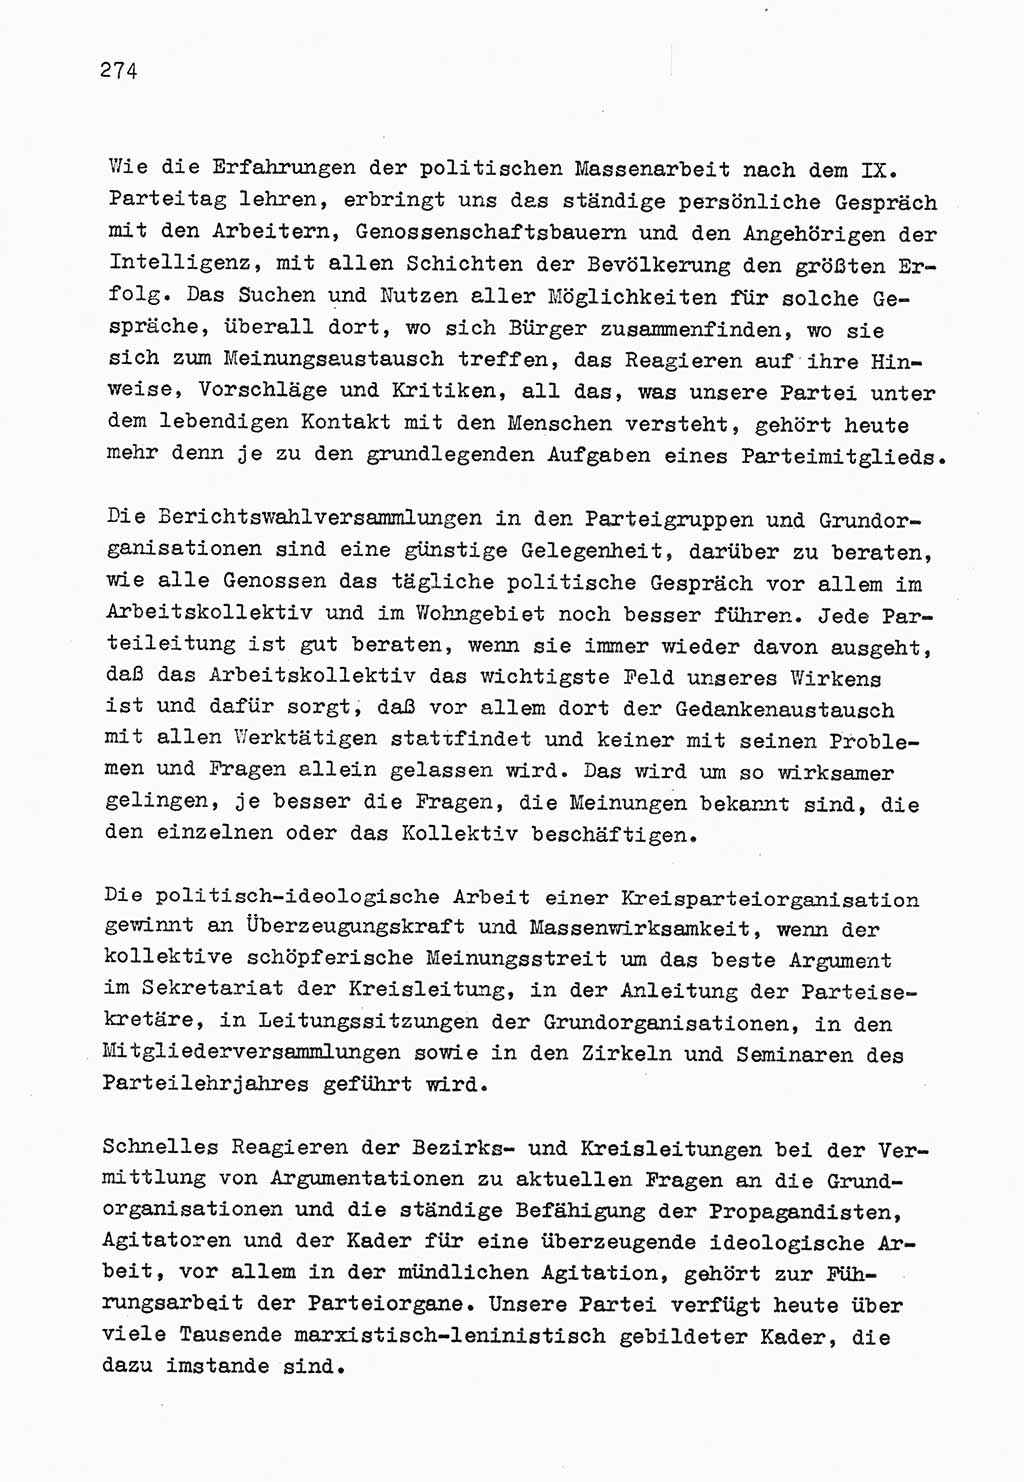 Zu Fragen der Parteiarbeit [Sozialistische Einheitspartei Deutschlands (SED) Deutsche Demokratische Republik (DDR)] 1979, Seite 274 (Fr. PA SED DDR 1979, S. 274)